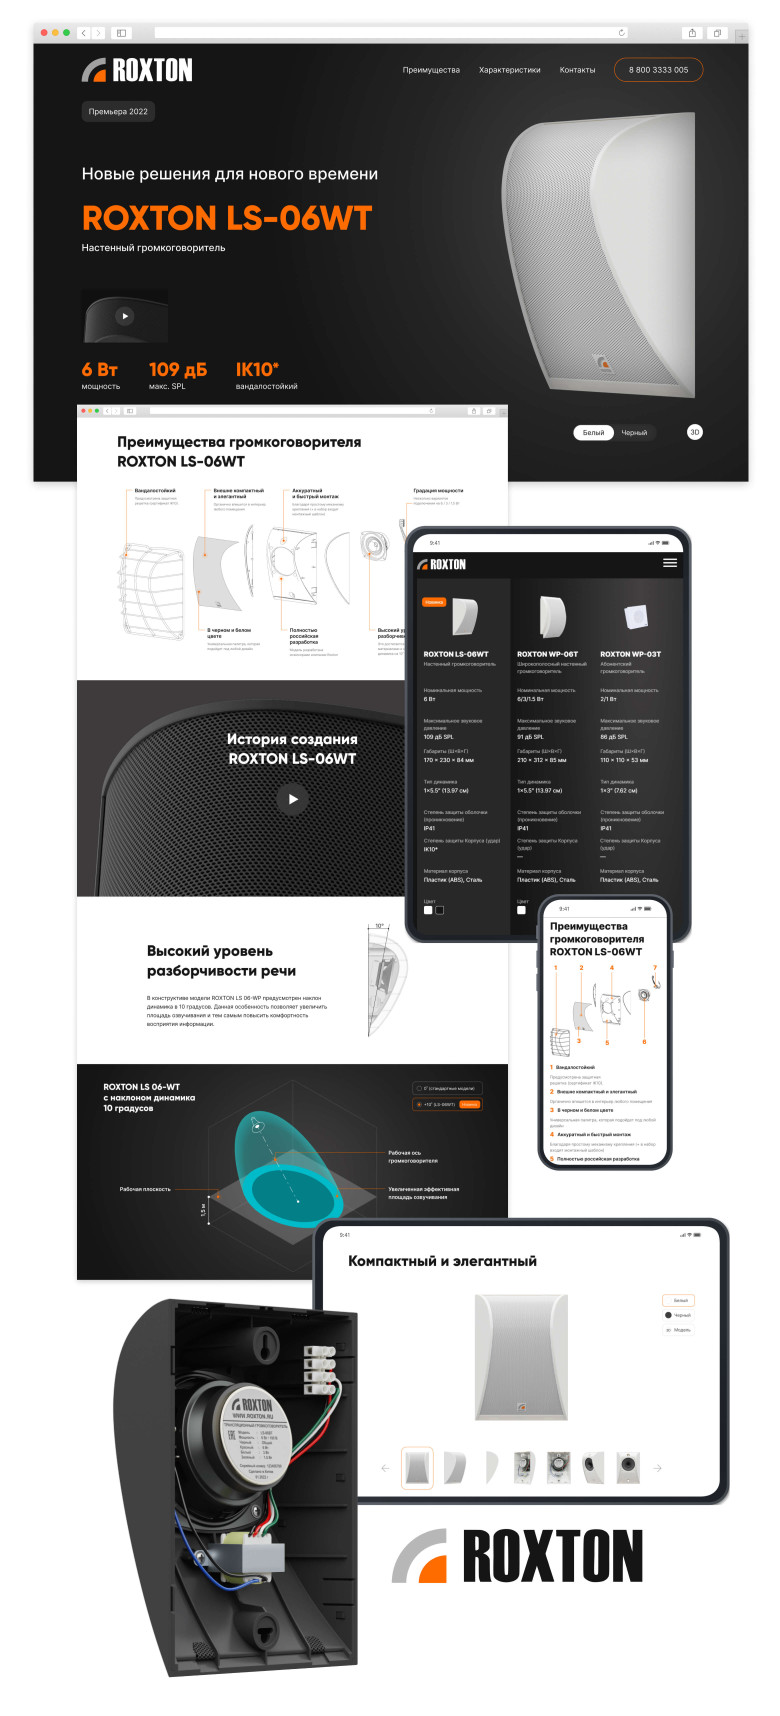 Проектирование, дизайн и верстка промо-страницы продукта компании Escort Group